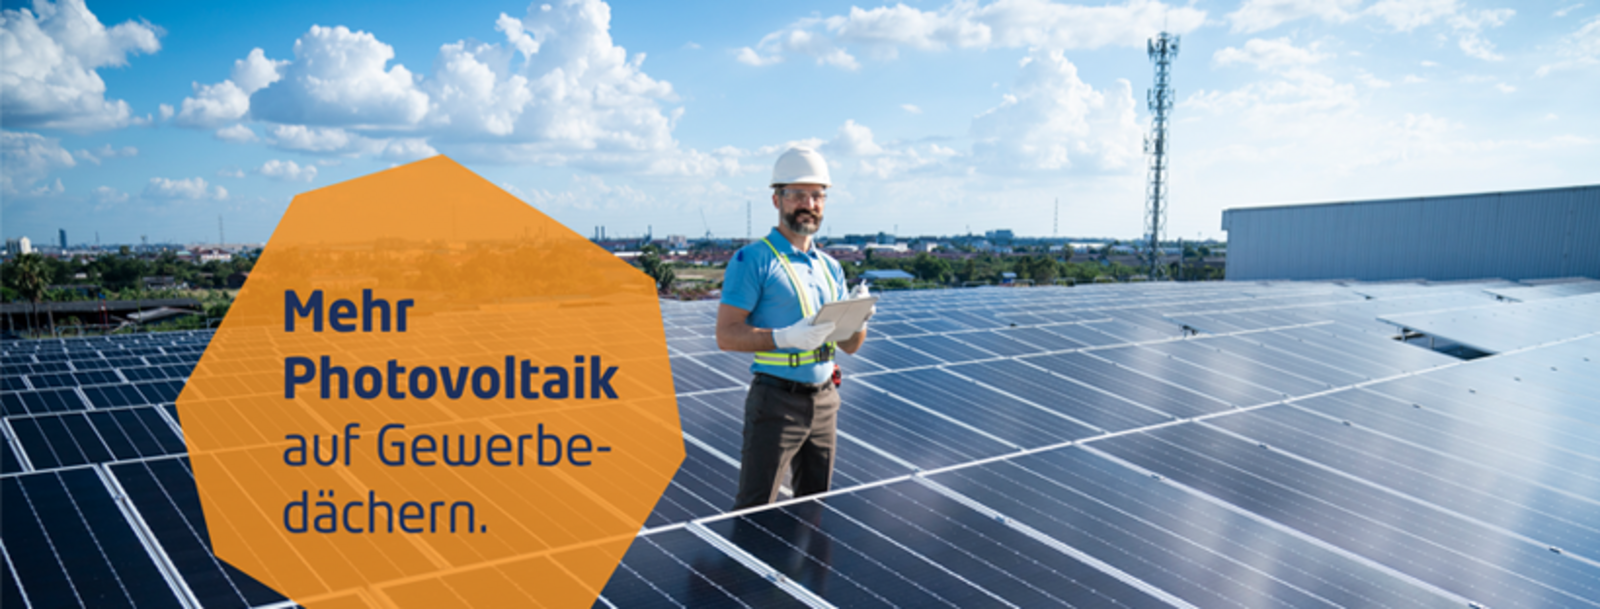 Erfolgreiche Kampagne für mehr Photovoltaik auf Gewerbedächern in NRW: 